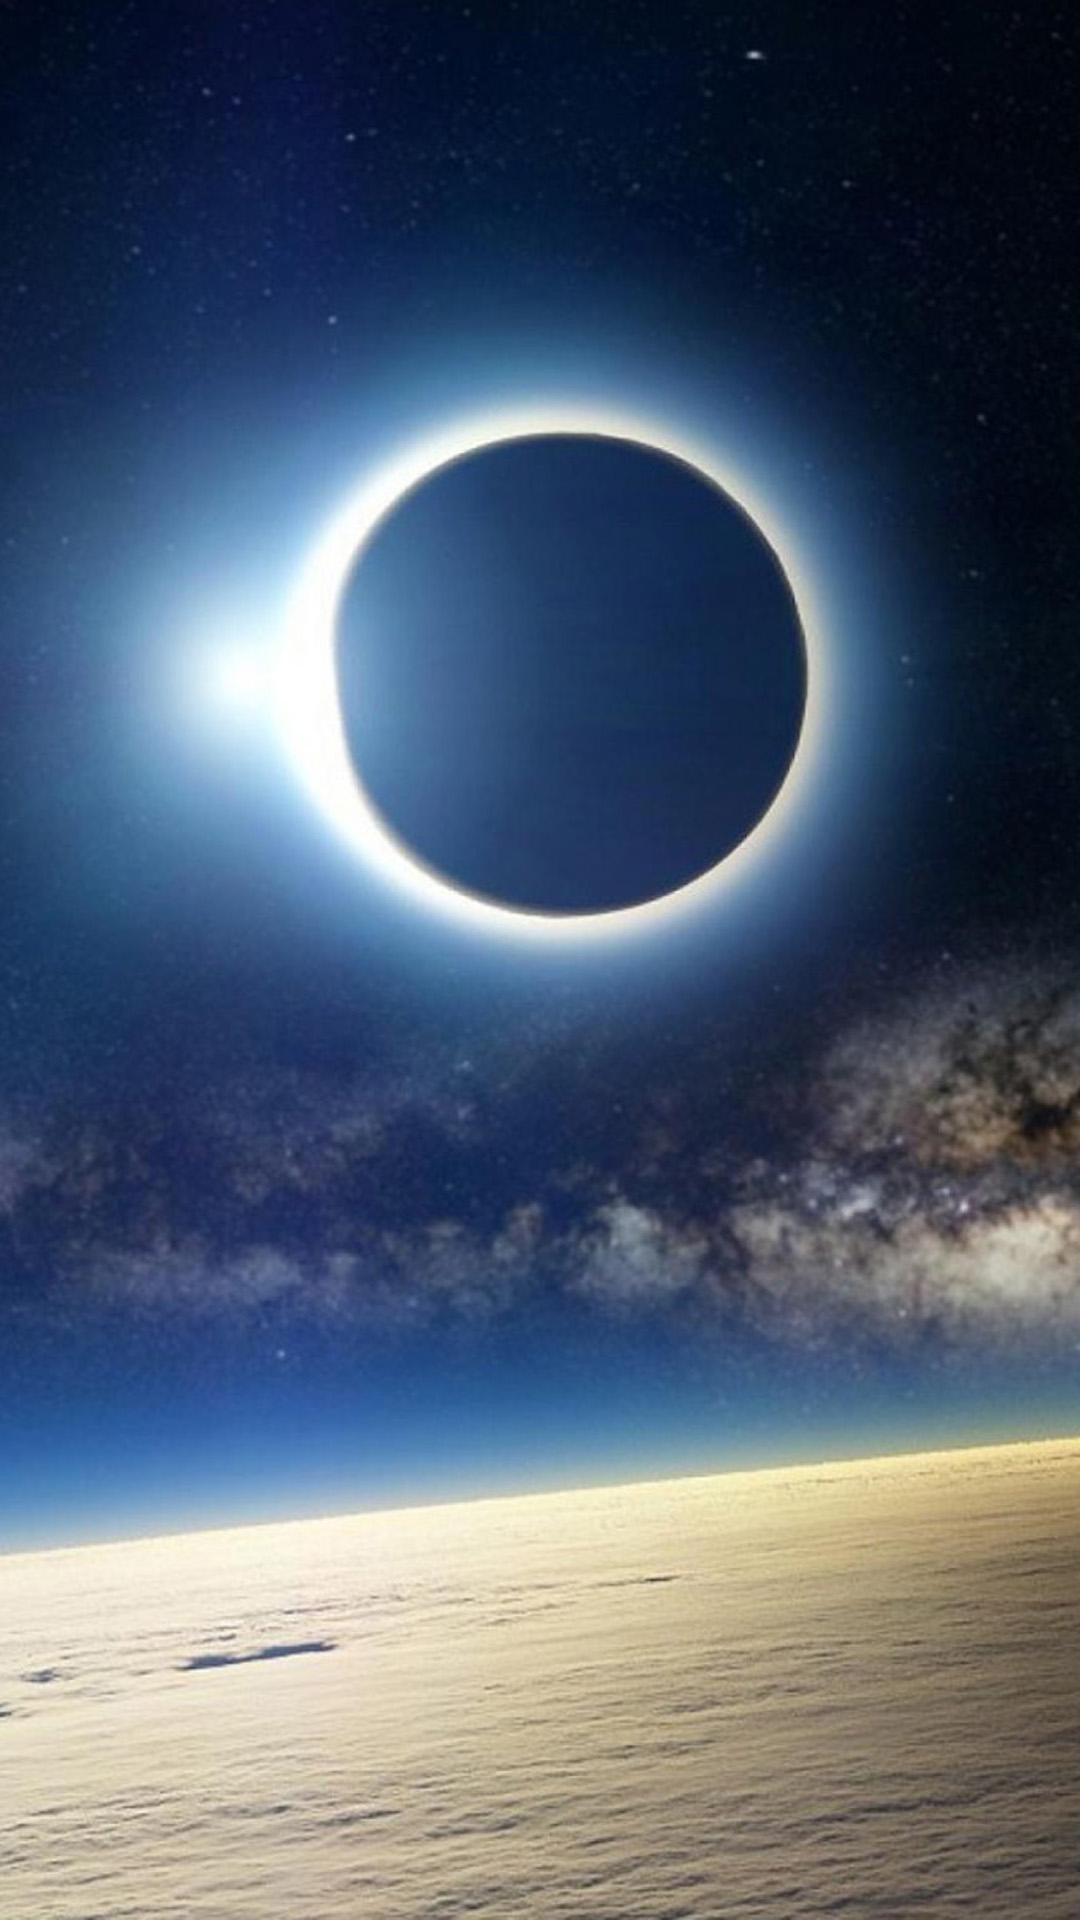 sfondi eclissi per iphone,cielo,atmosfera,orizzonte,giorno,oggetto astronomico